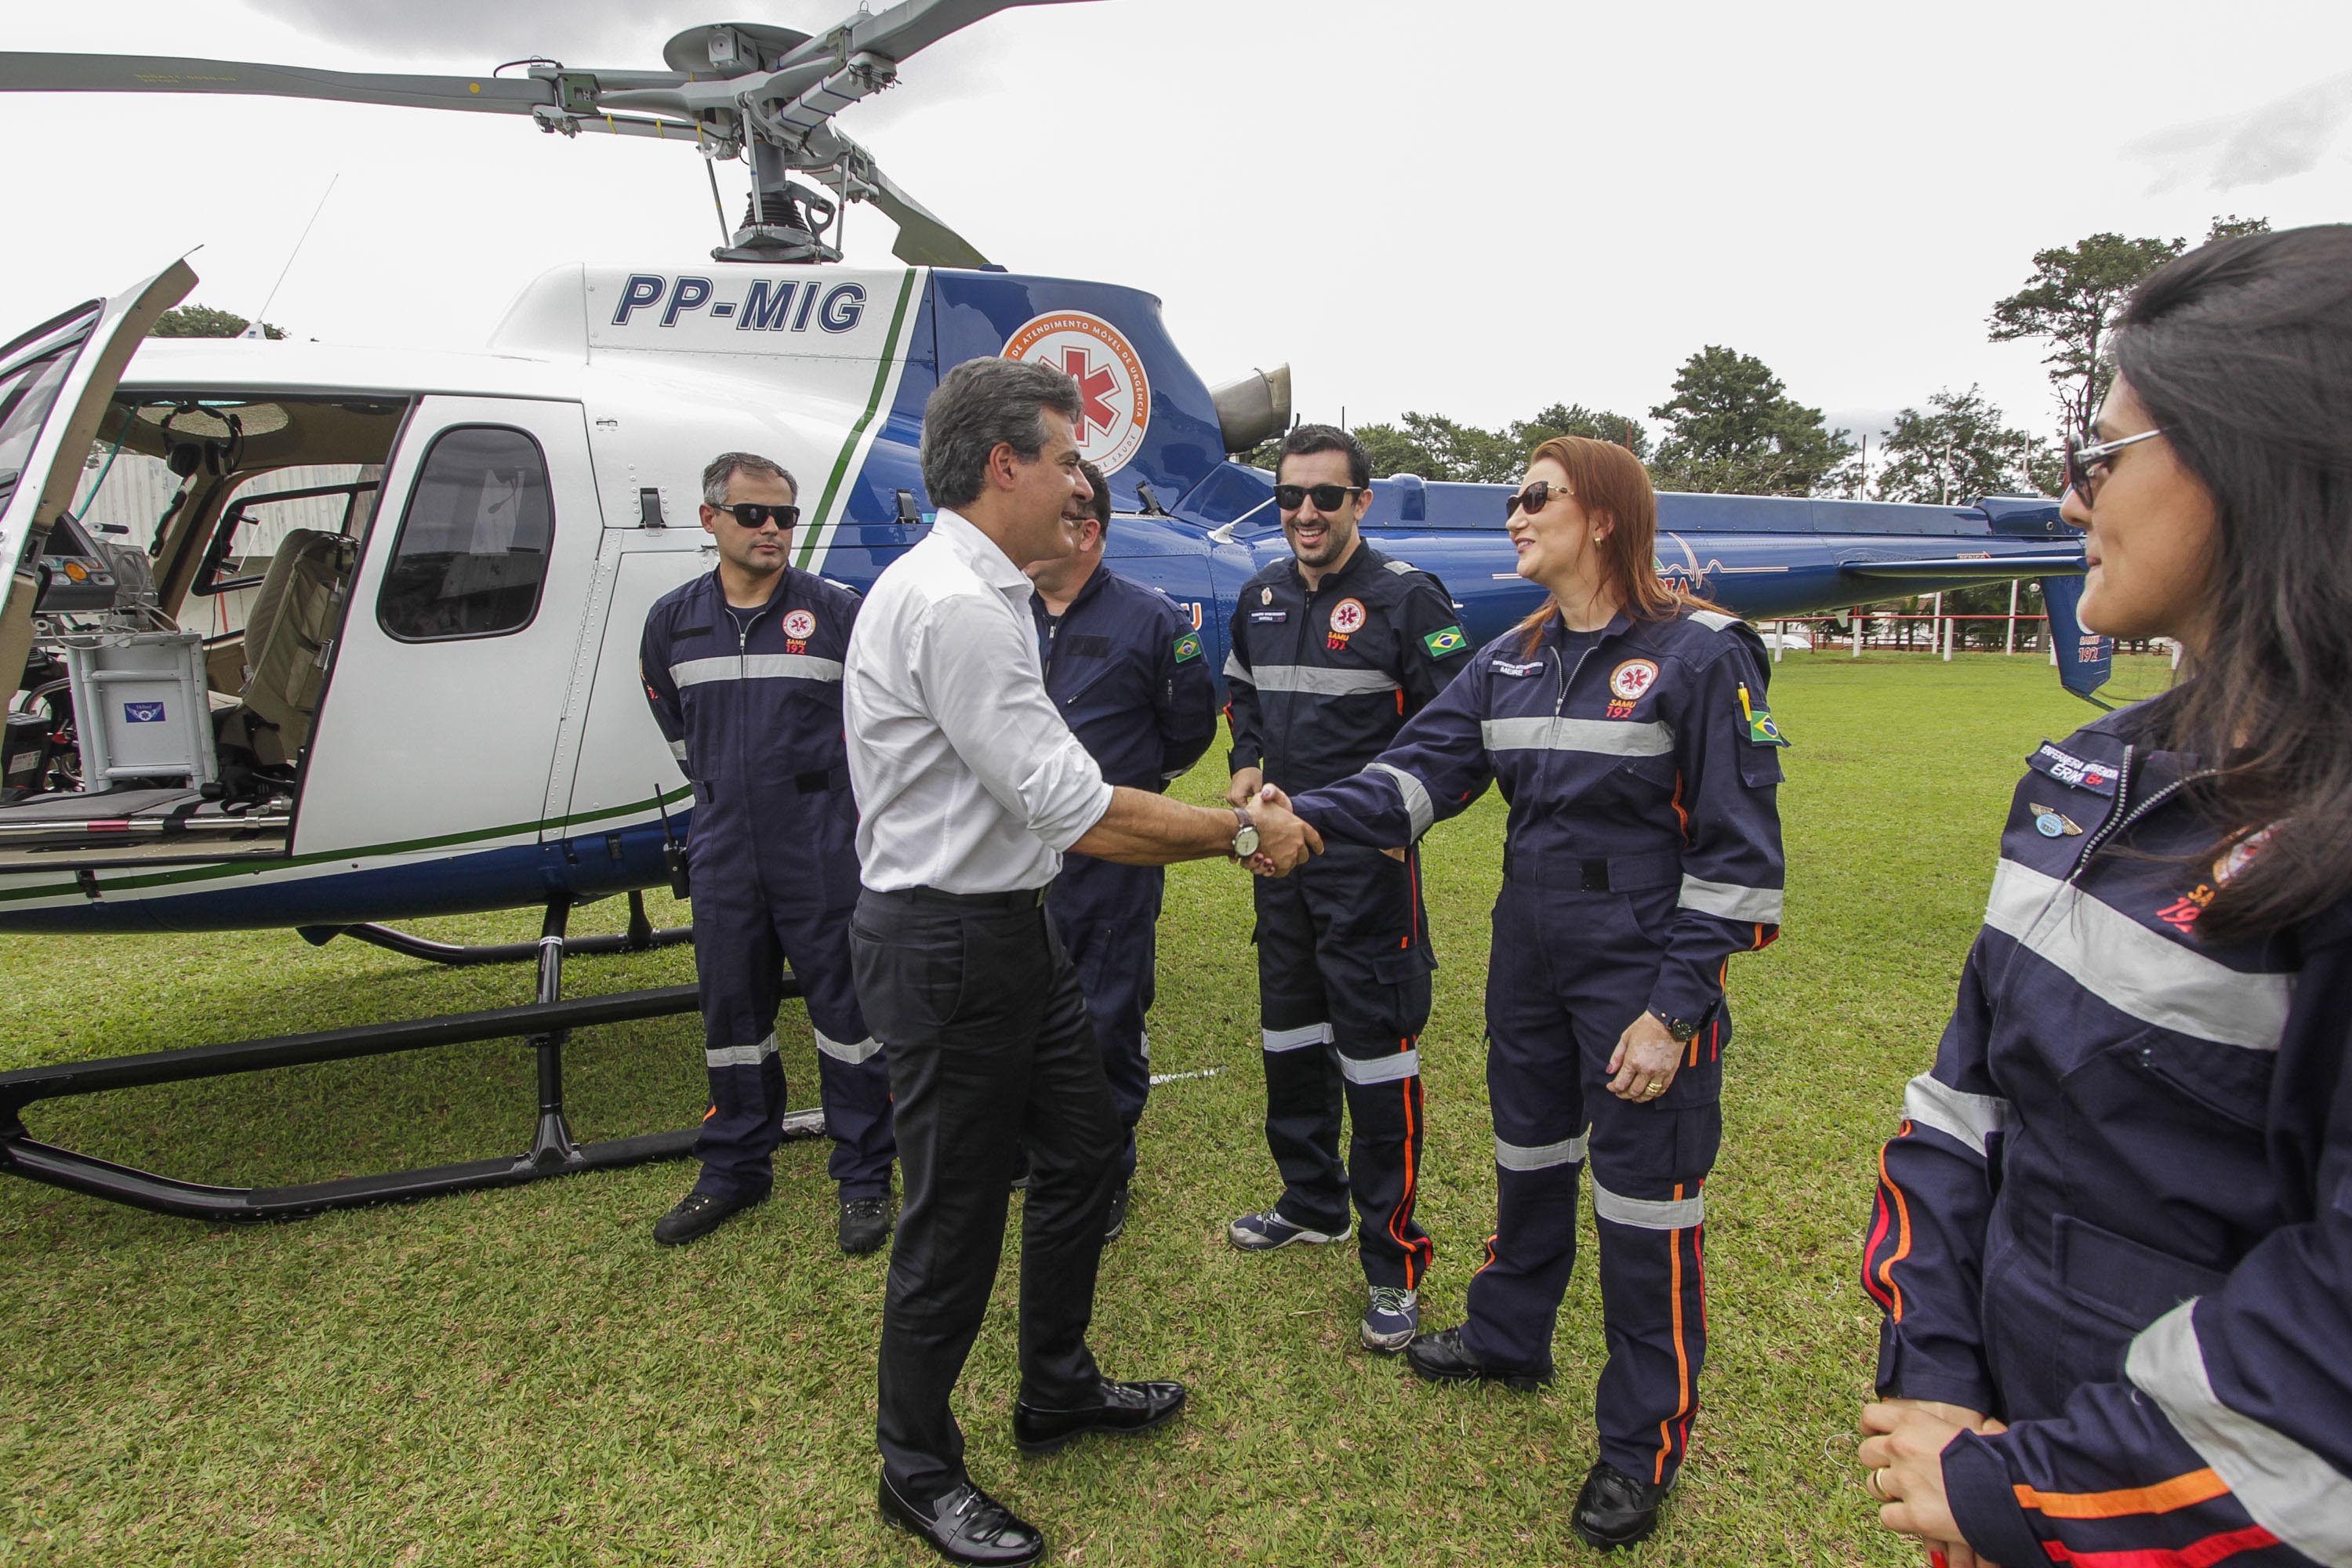 Resgate aéreo, criado por Beto Richa, completa 10 anos salvando vidas